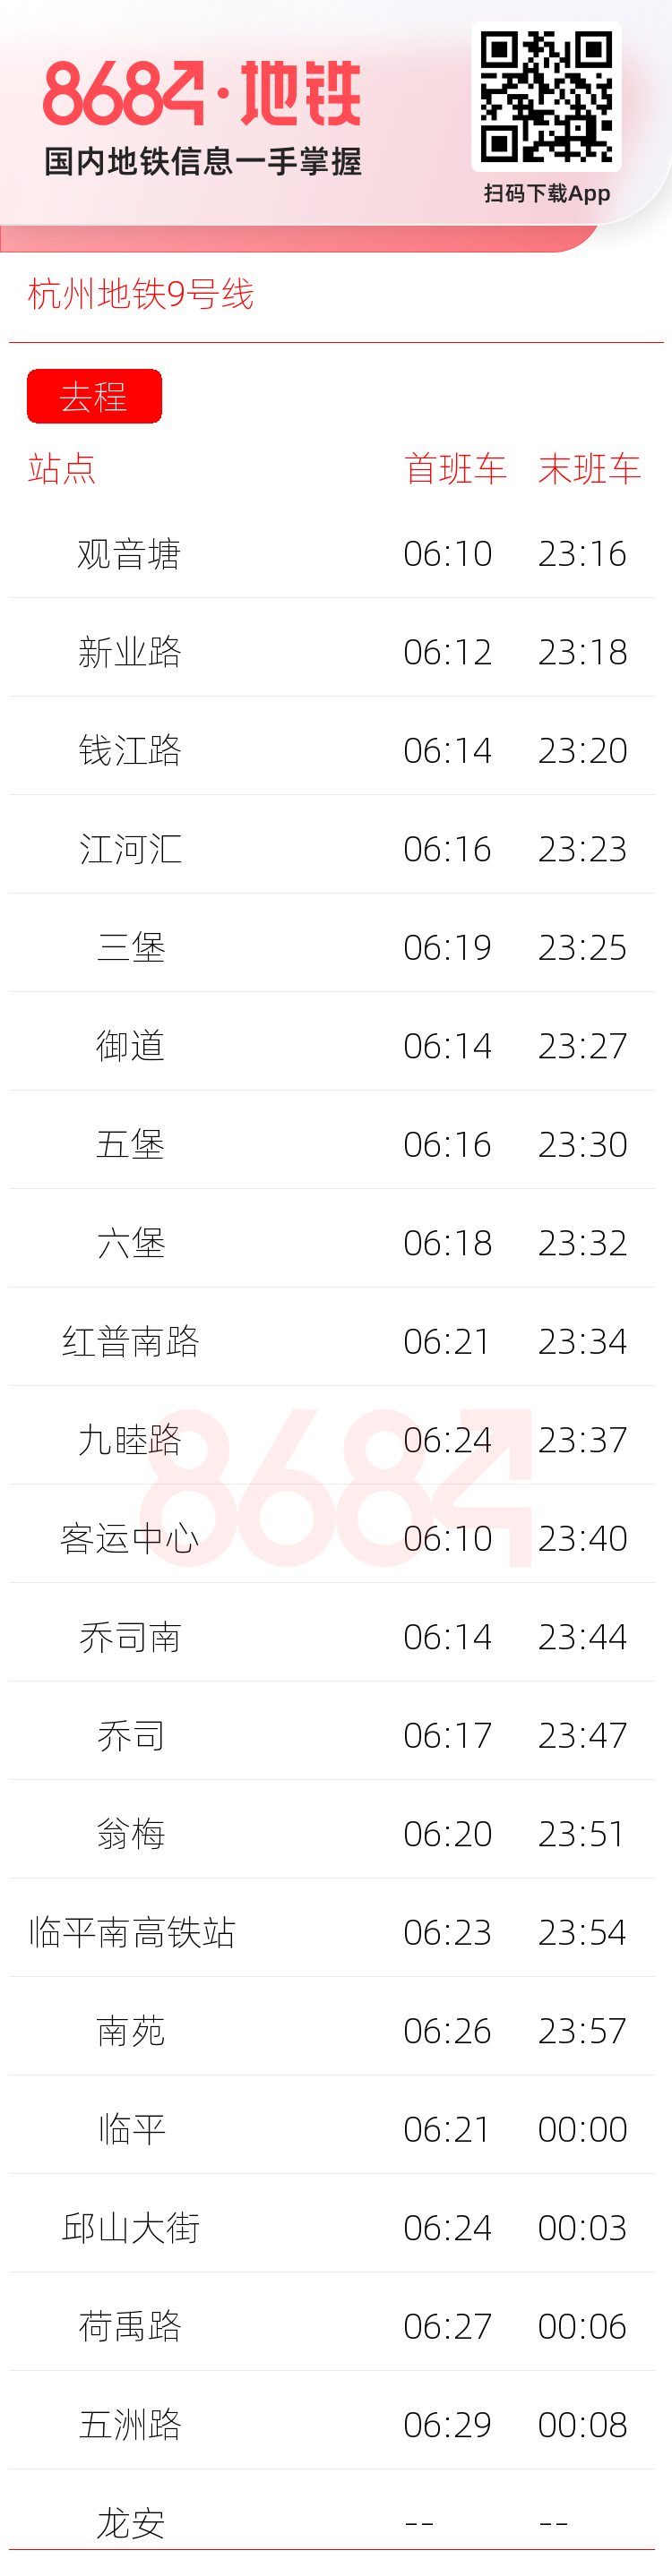 杭州地铁9号线运营时间表